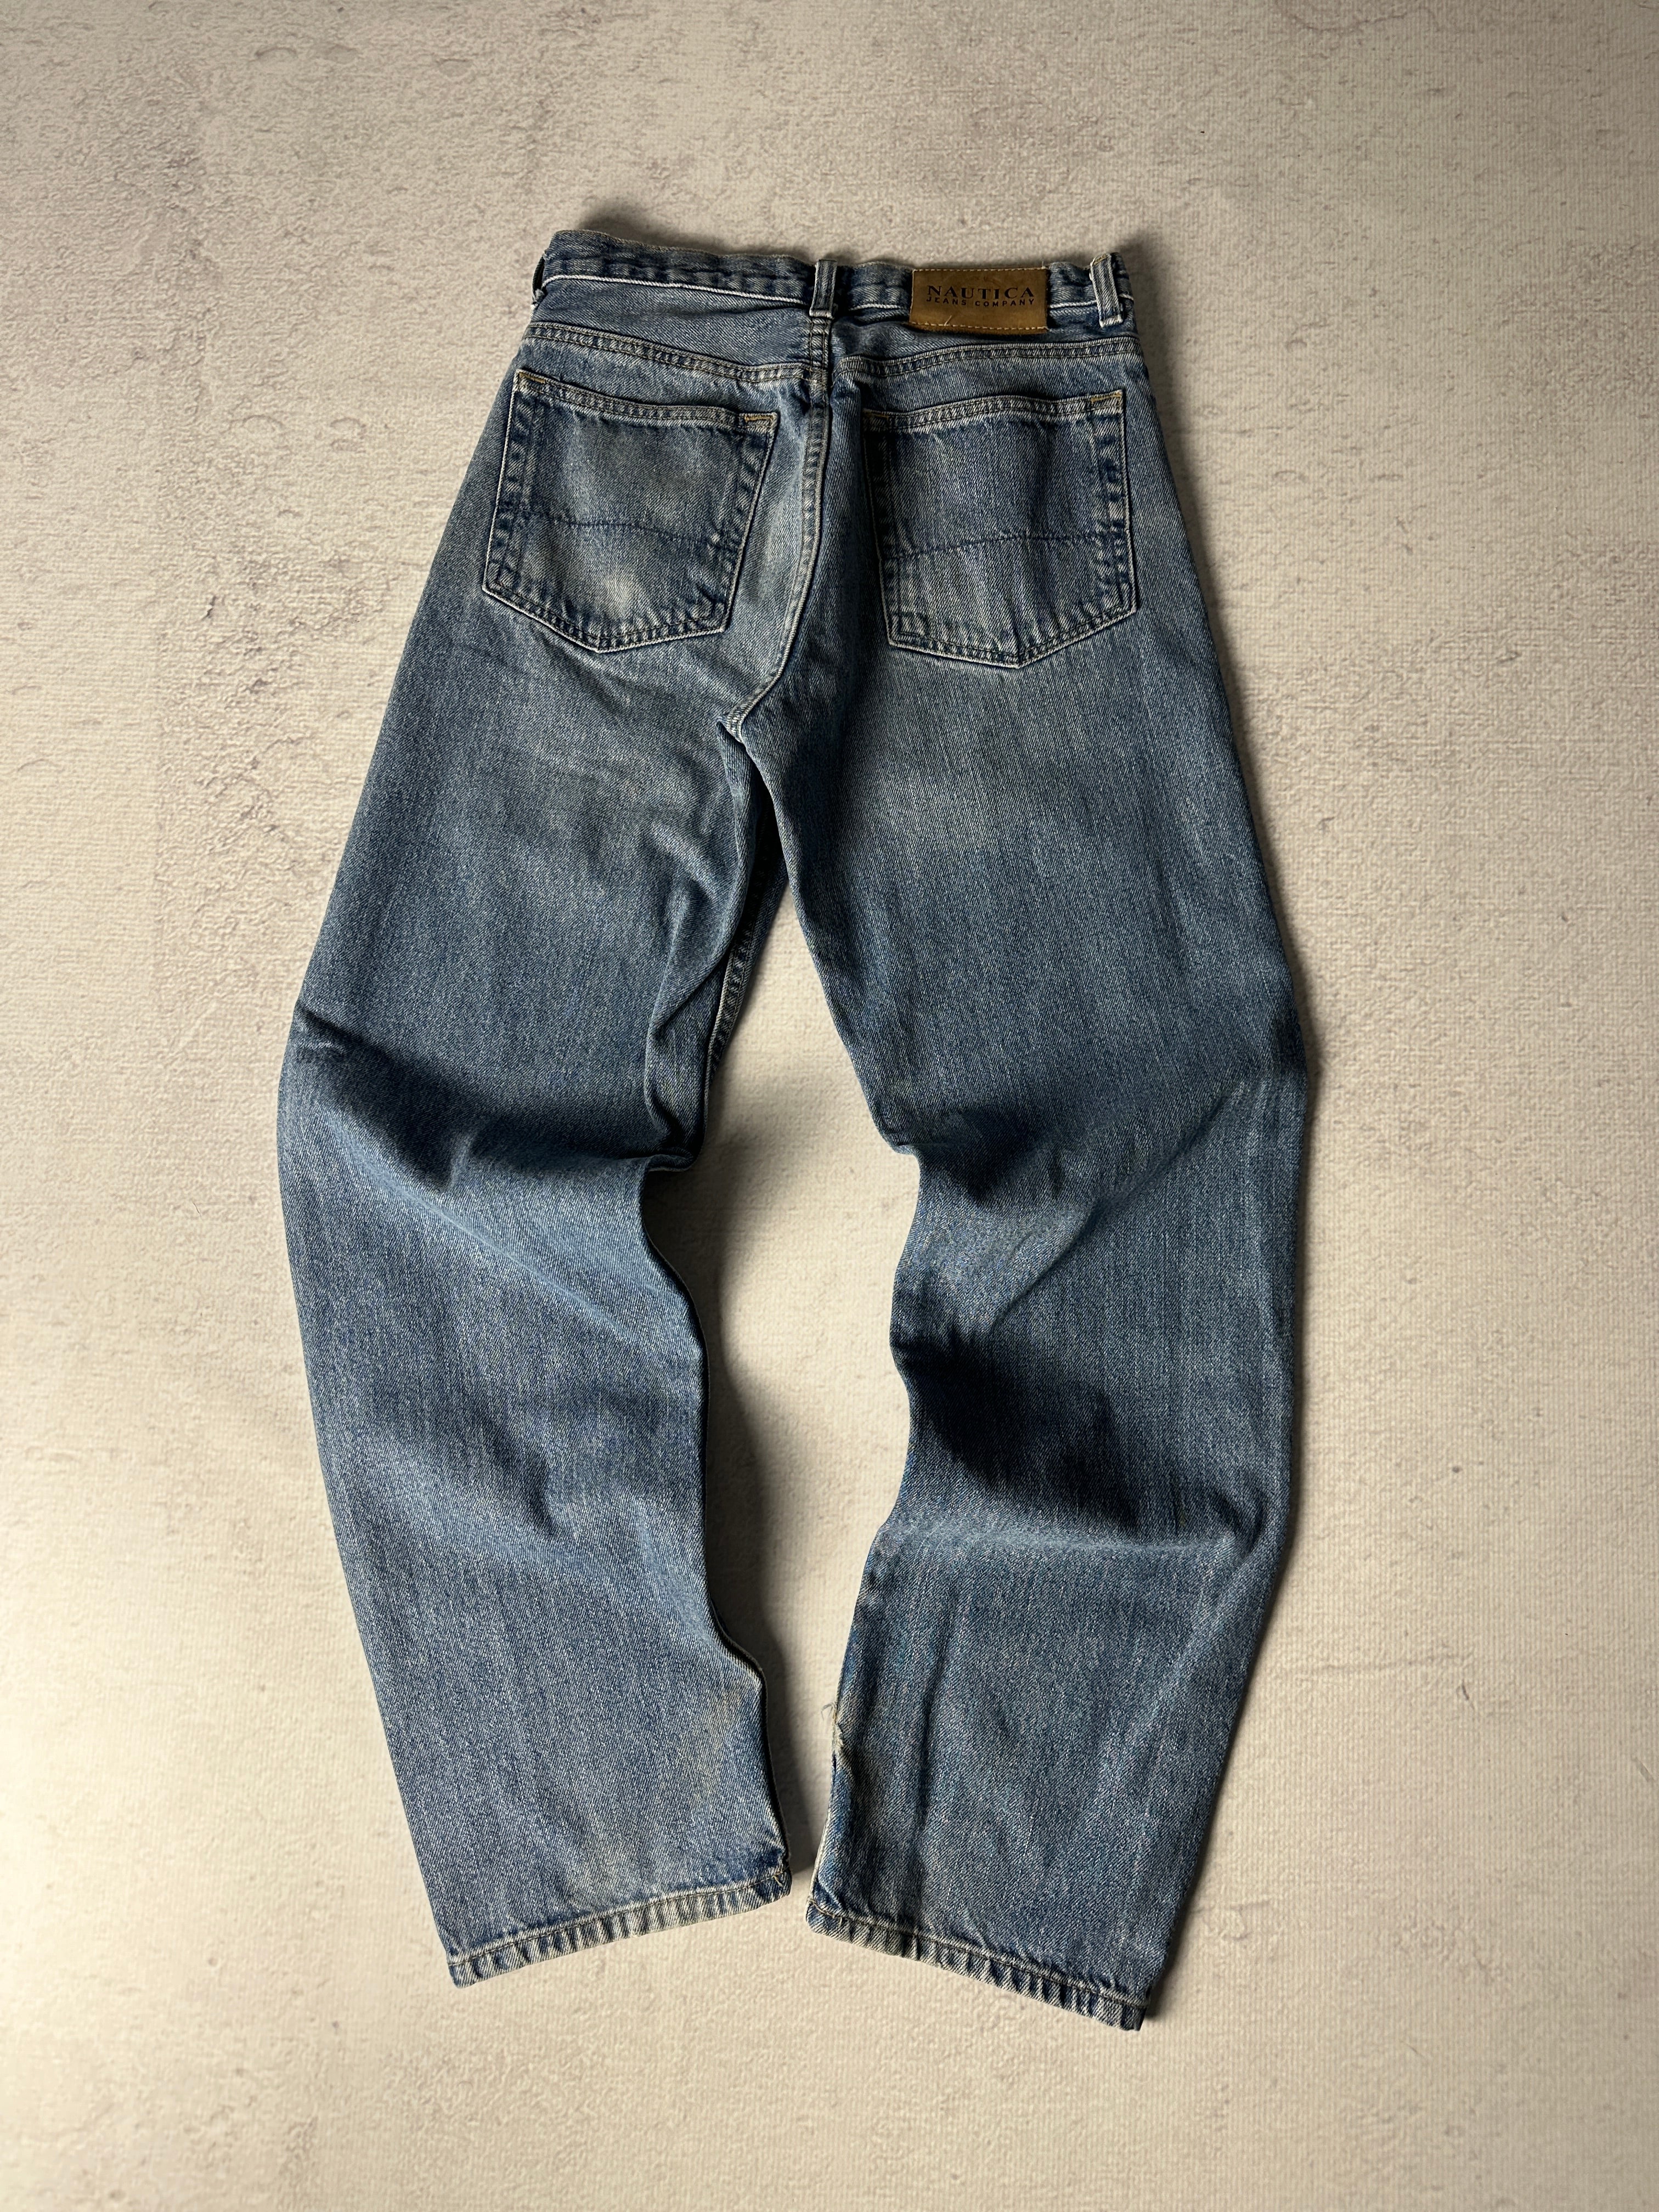 Vintage Nautica Jeans - Men's 28W30L